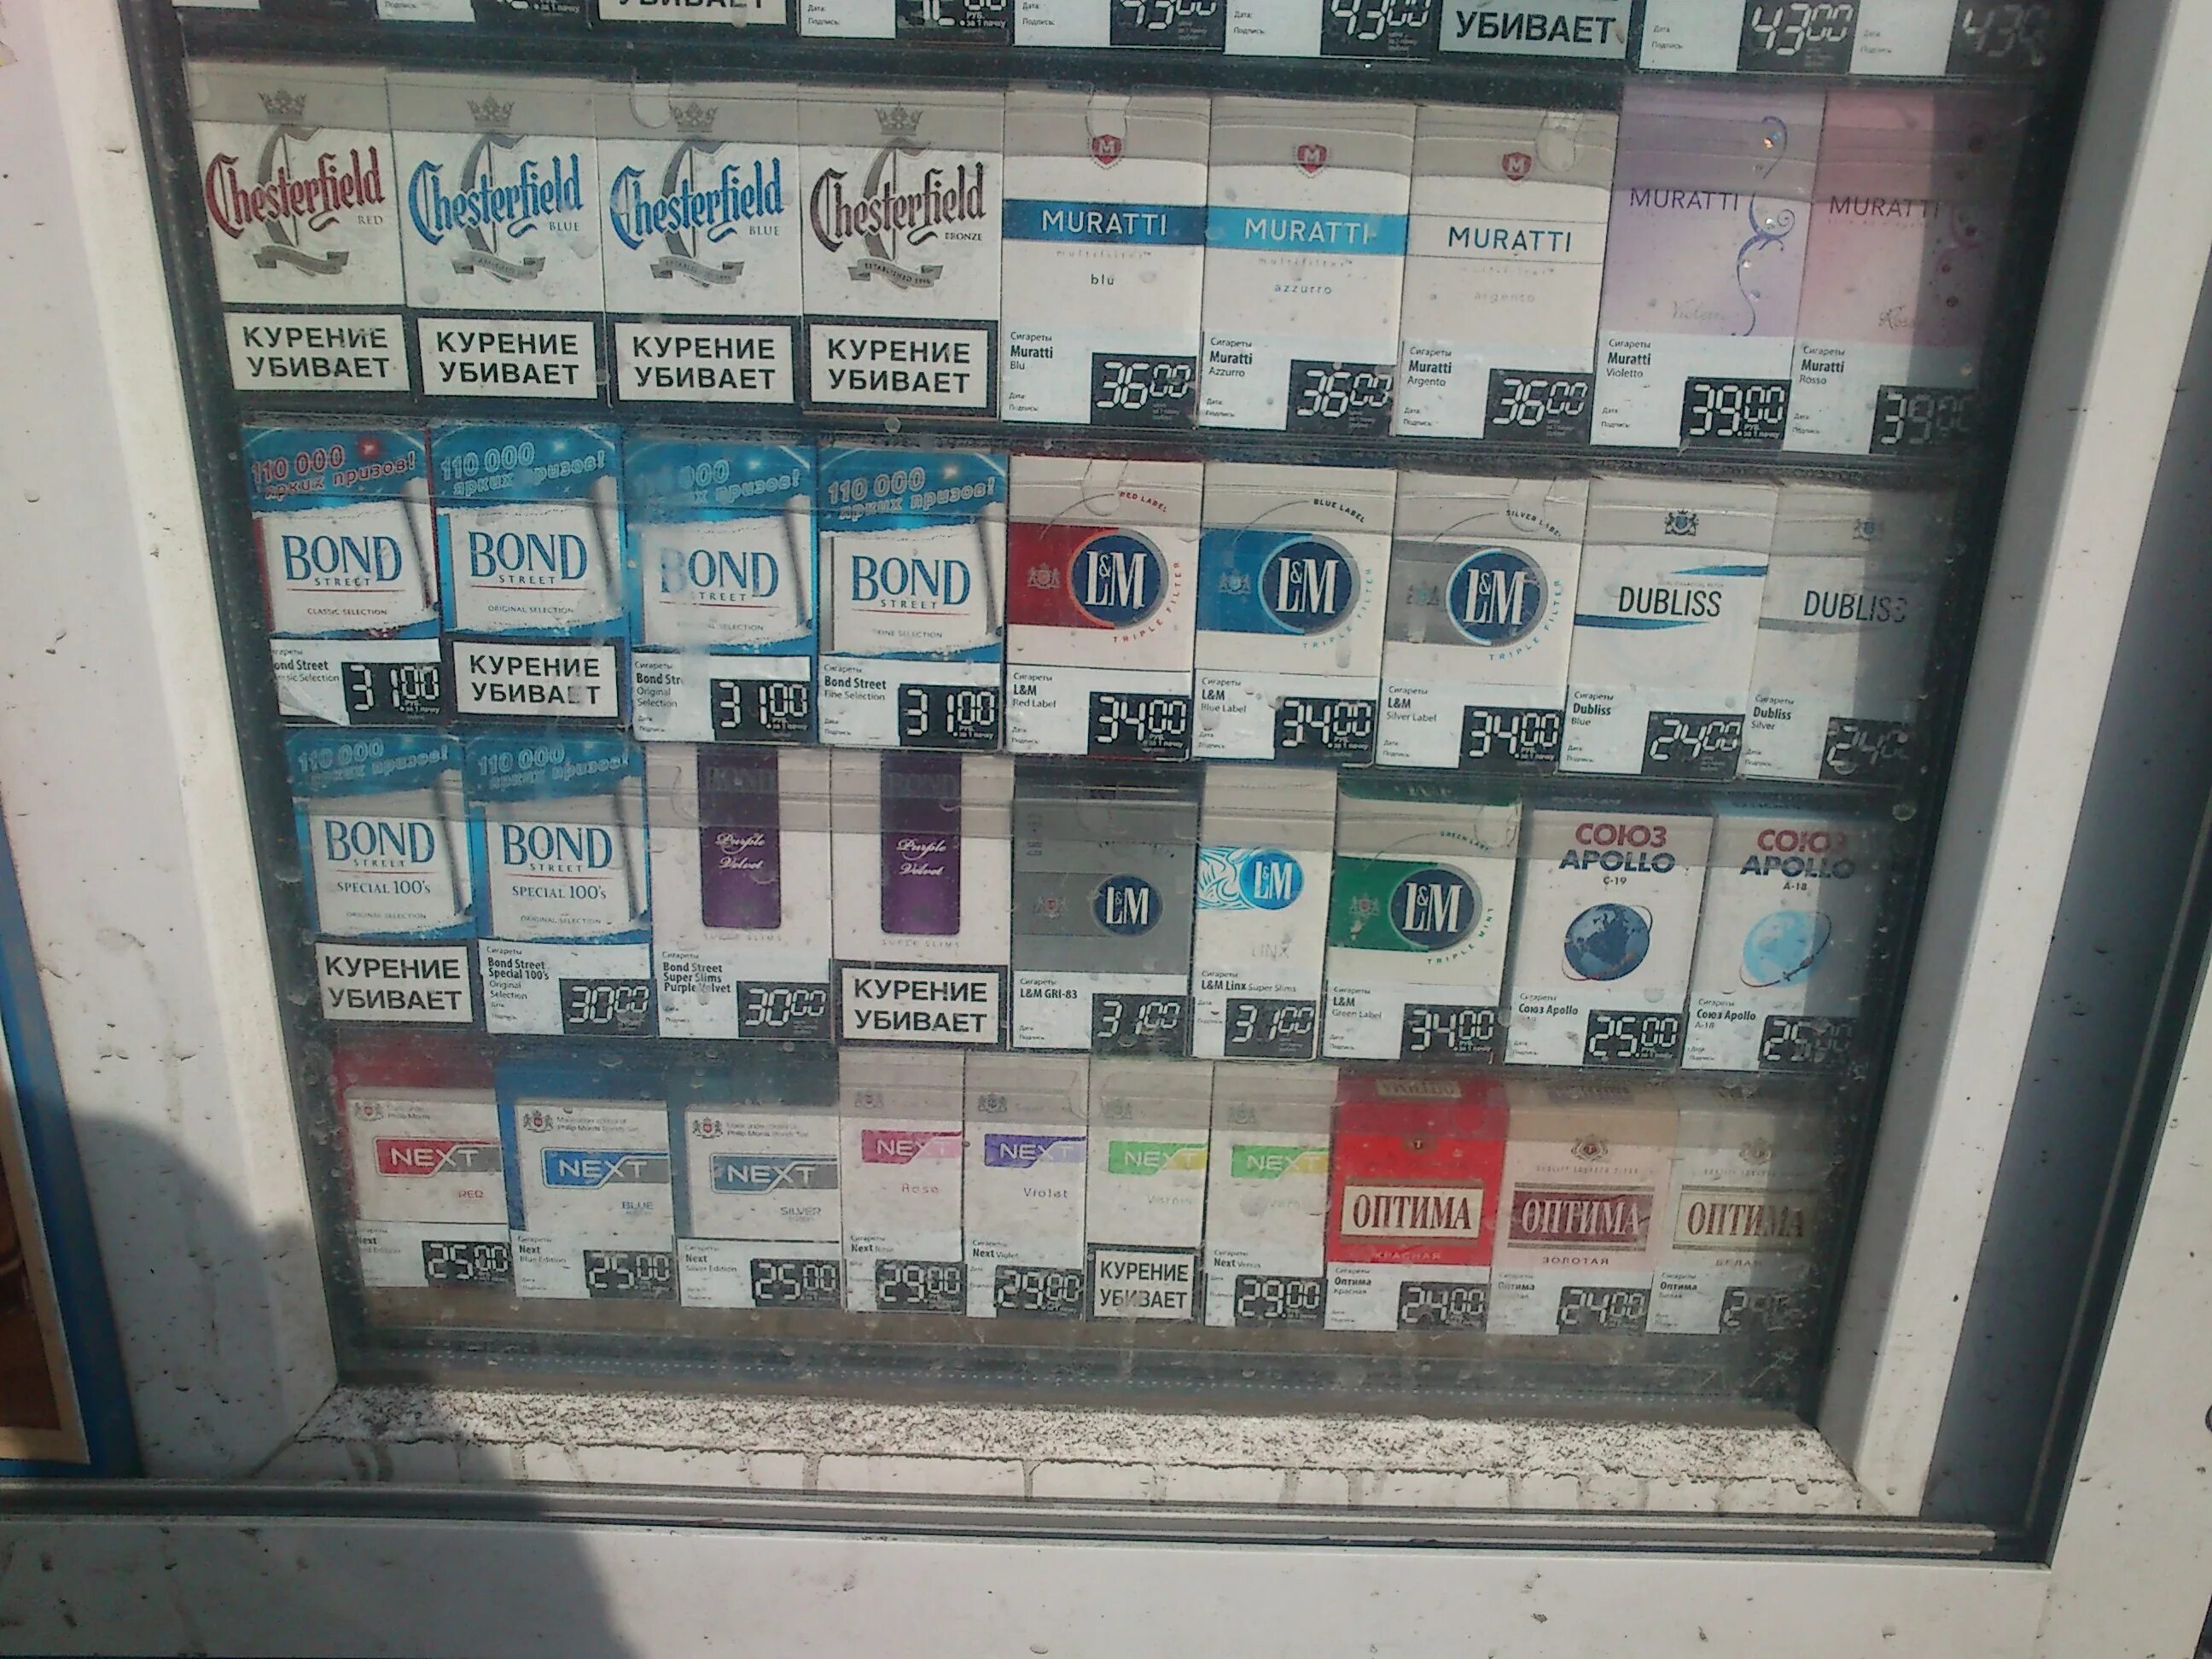 Цены на сигареты в минске. Ценники на сигареты в магазинах. Сигареты 2006 года. Прилавок сигарет. Ценники для табачного магазина.